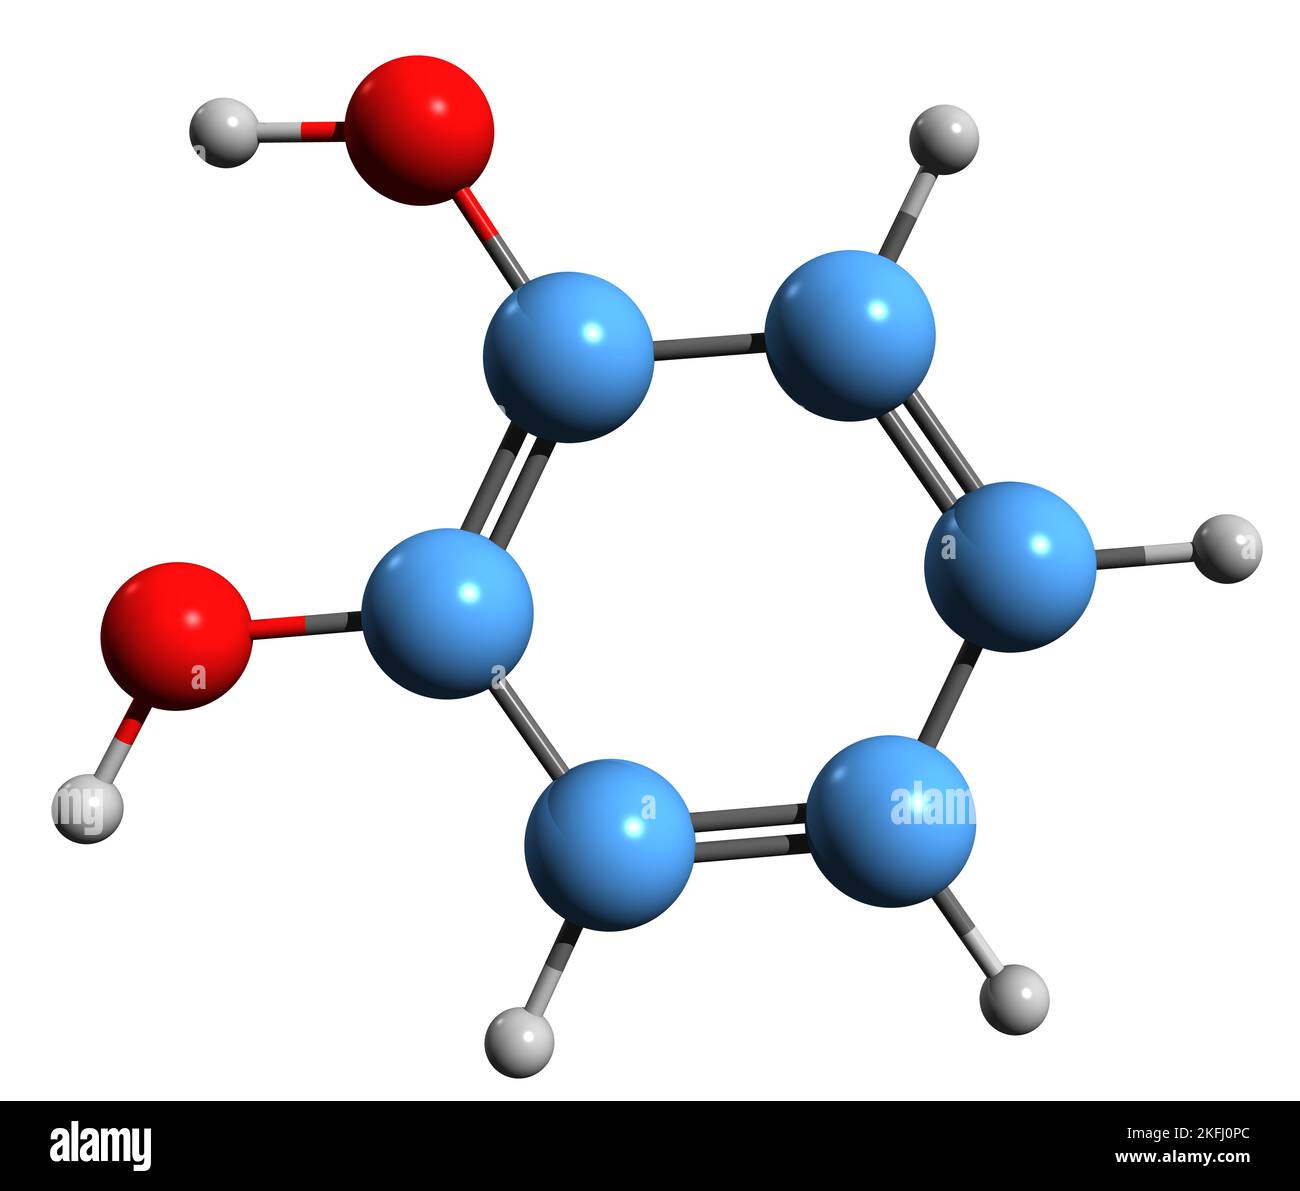 3D Bild der Skelettformel von Catechol - molekularchemische Struktur von Benzenediol isoliert auf weißem Hintergrund Stockfoto